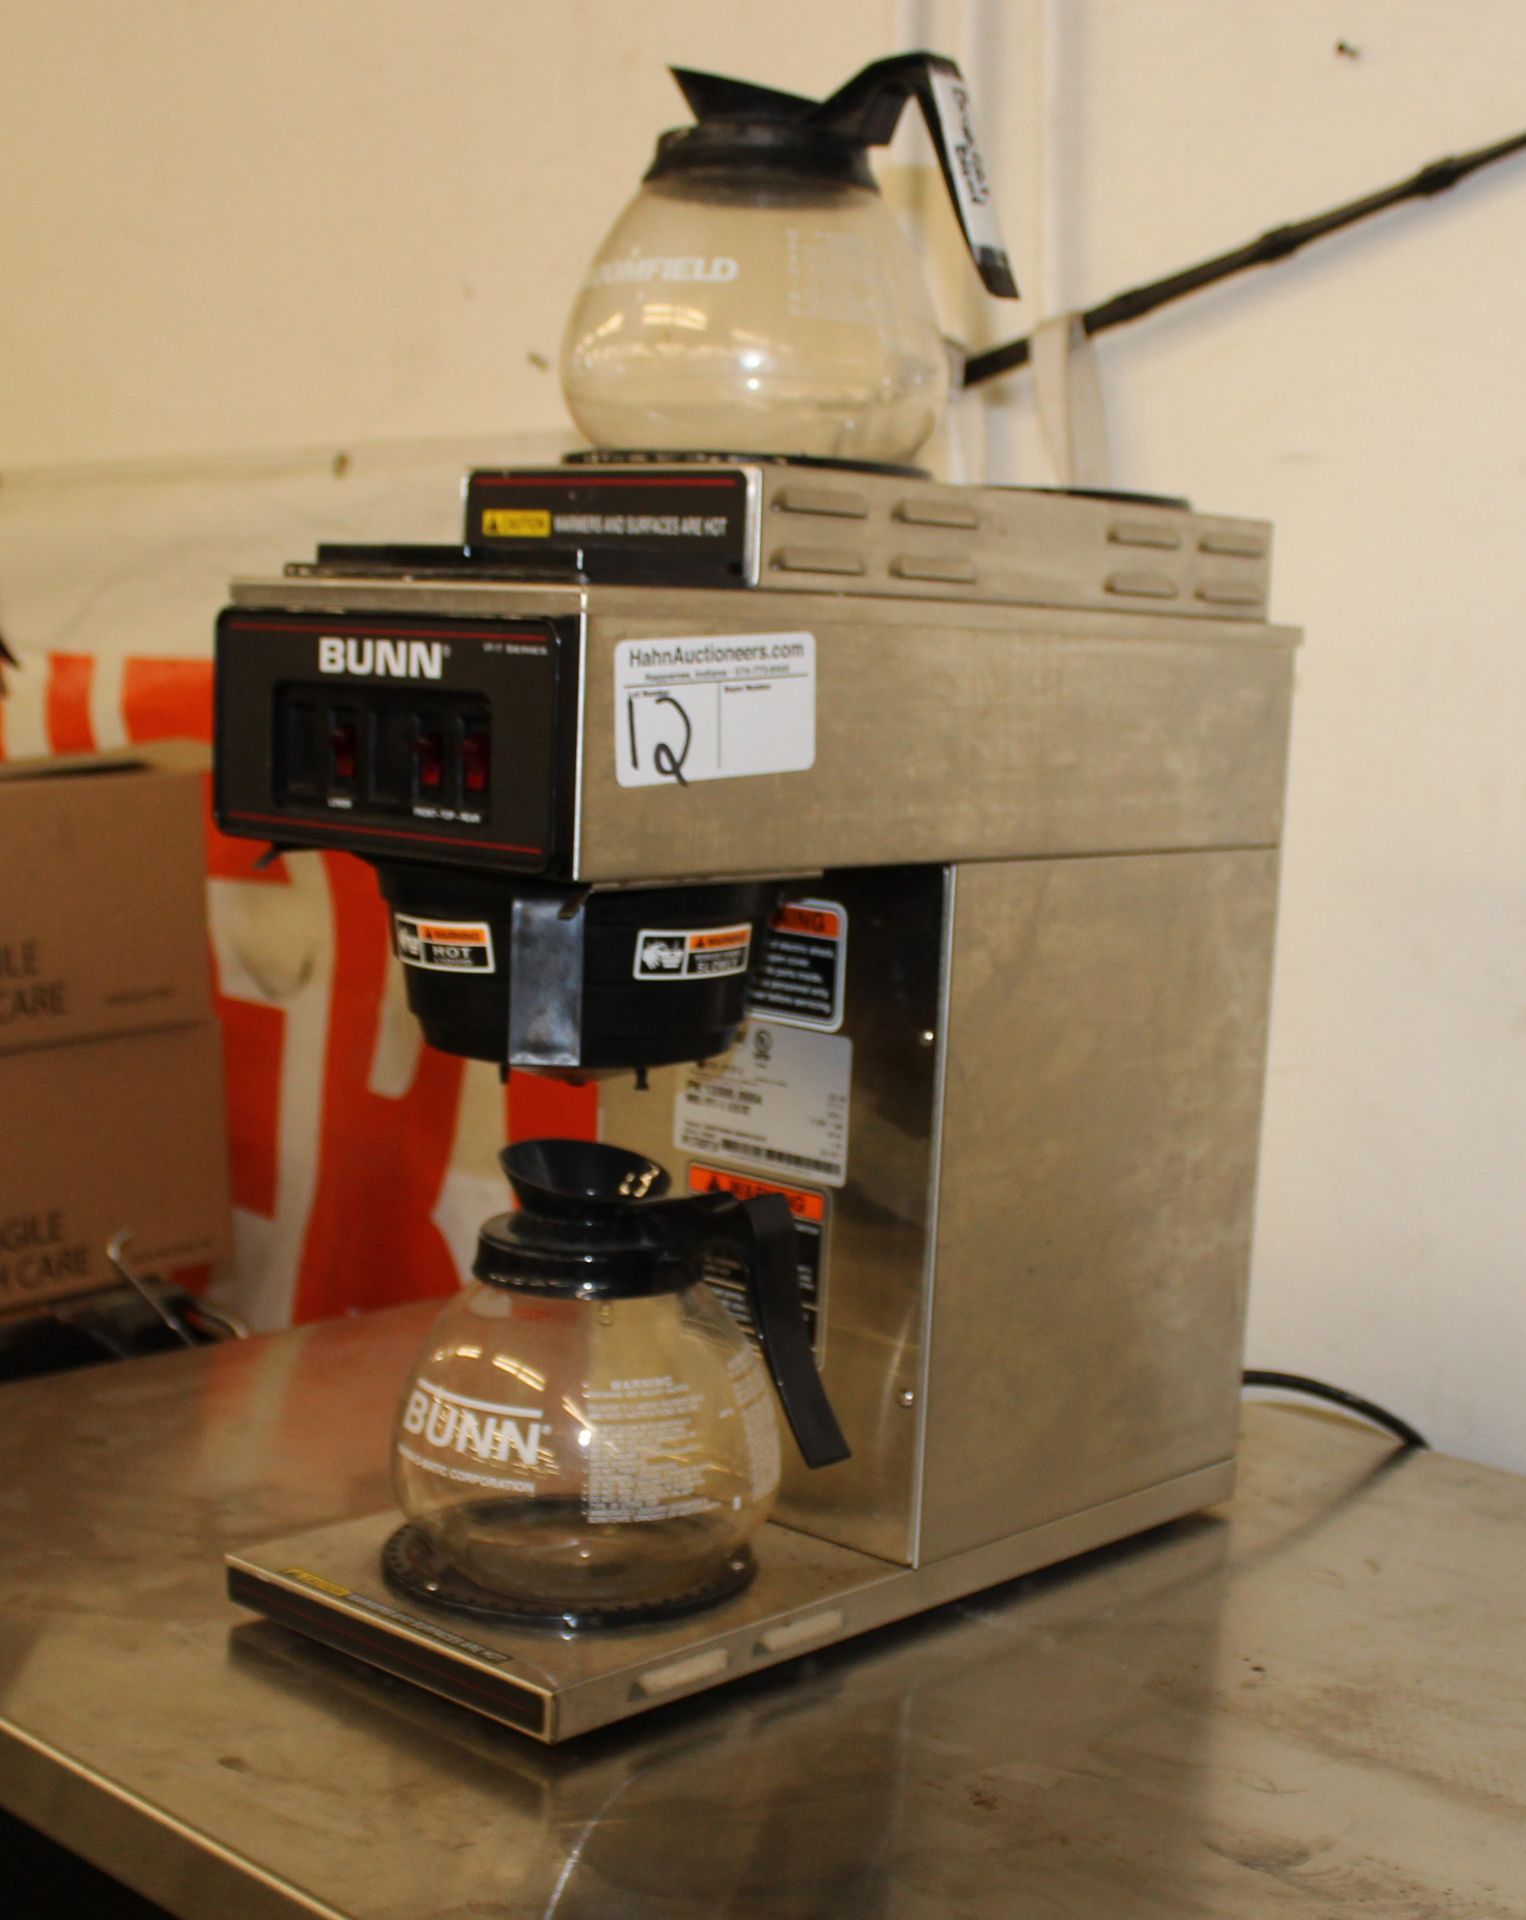 Bunn VP-17 series coffee maker